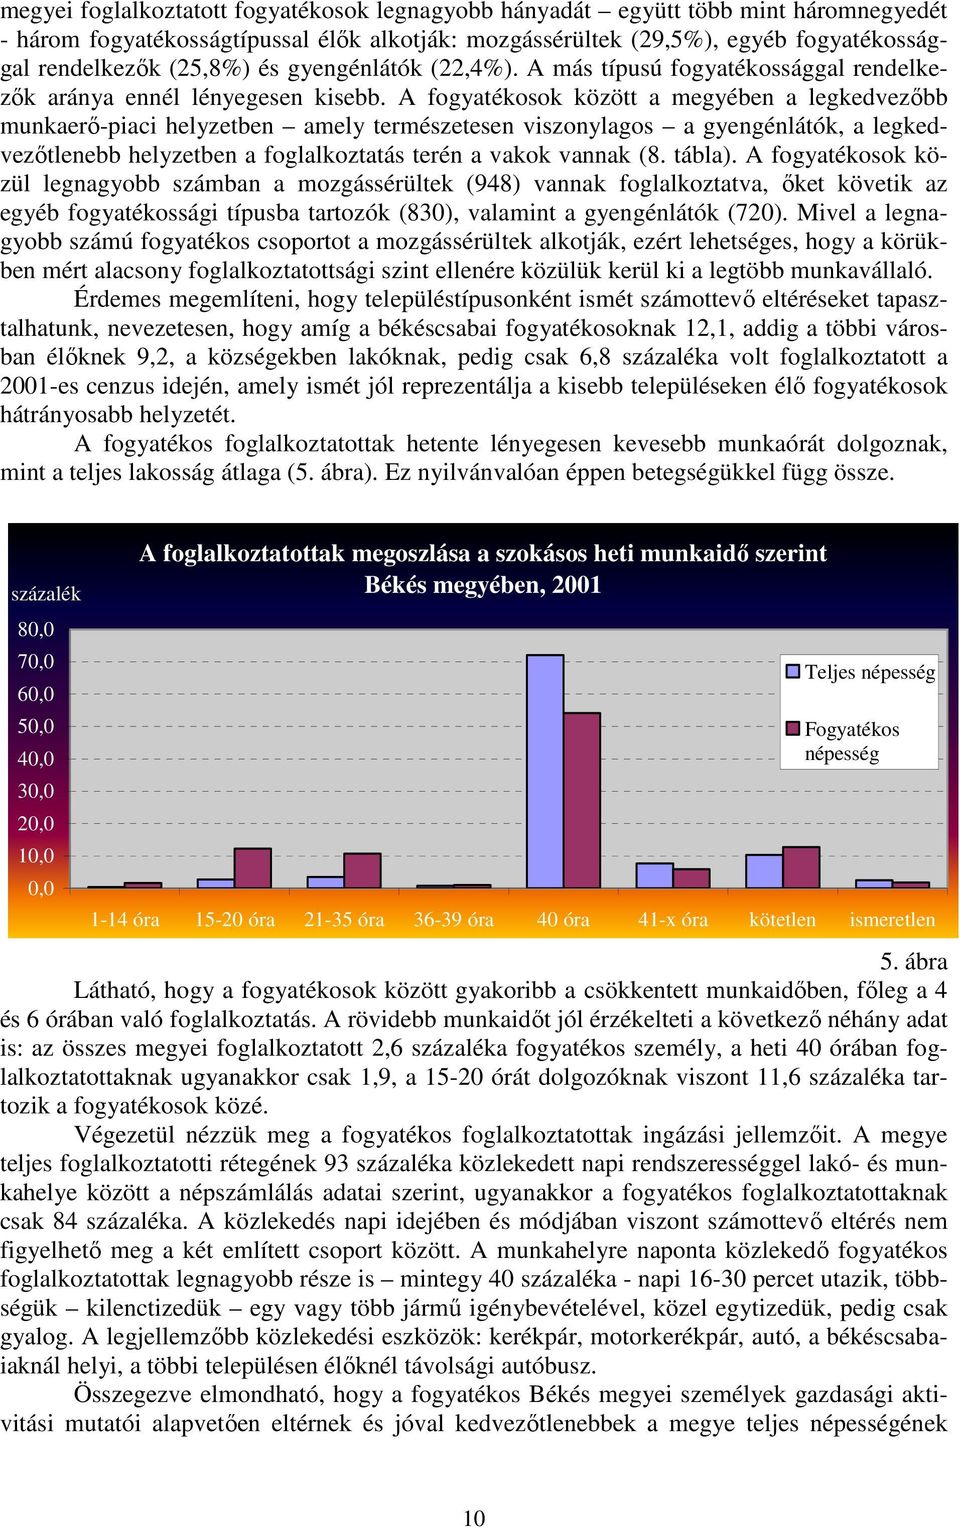 A fogyatékosok között a megyében a legkedvezıbb munkaerı-piaci helyzetben amely természetesen viszonylagos a gyengénlátók, a legkedvezıtlenebb helyzetben a foglalkoztatás terén a vakok vannak (8.